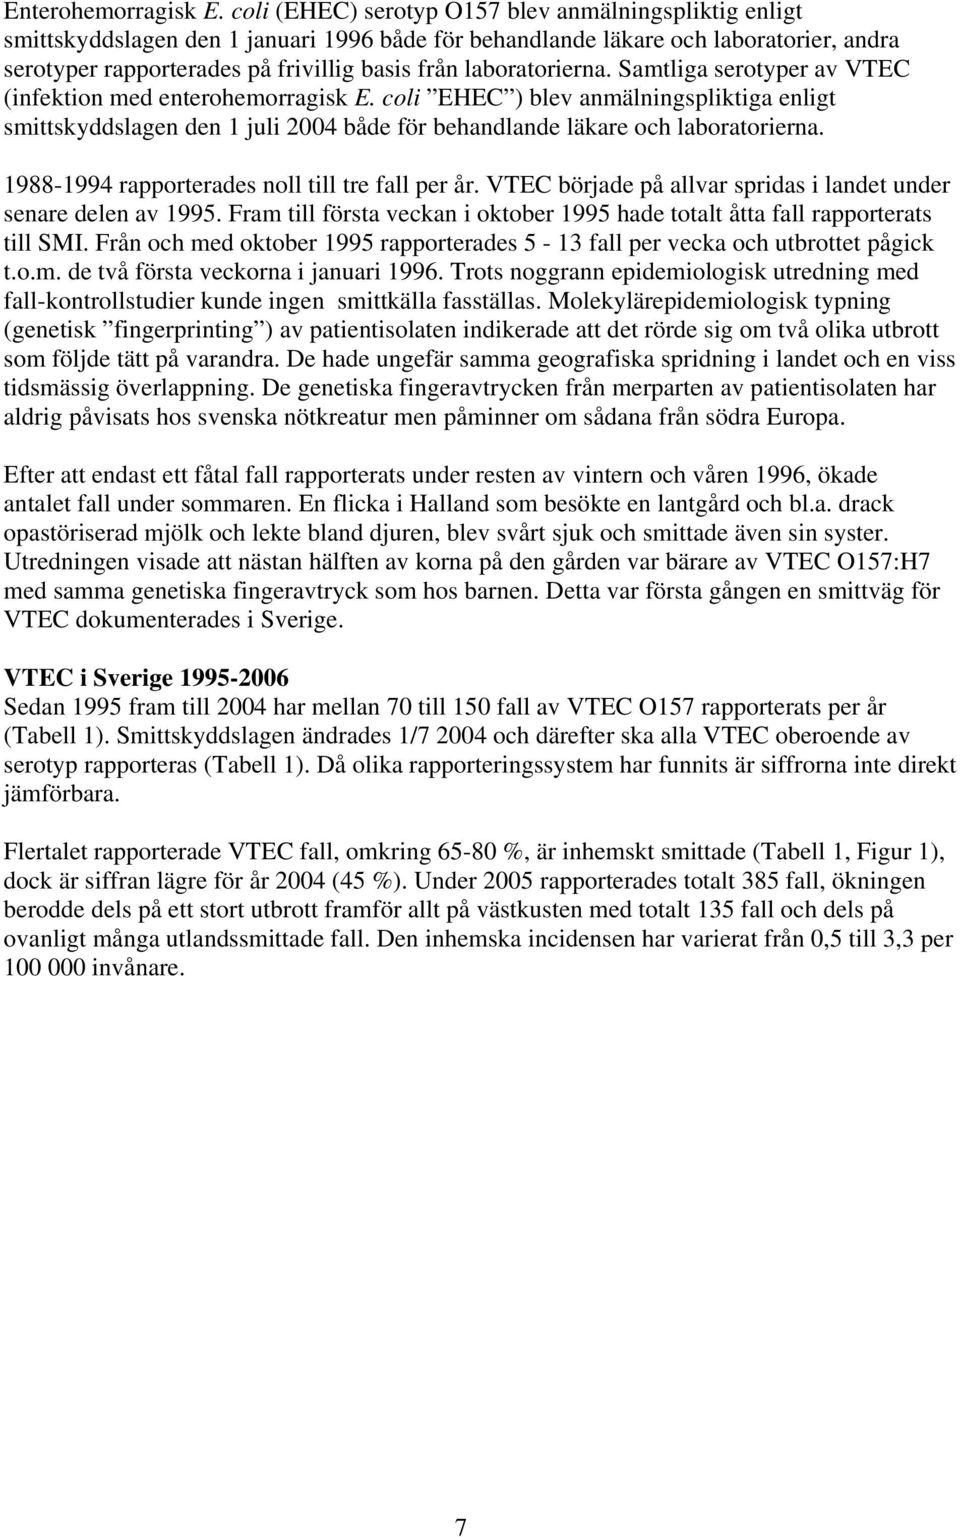 laboratorierna. Samtliga serotyper av VTEC (infektion med enterohemorragisk E.